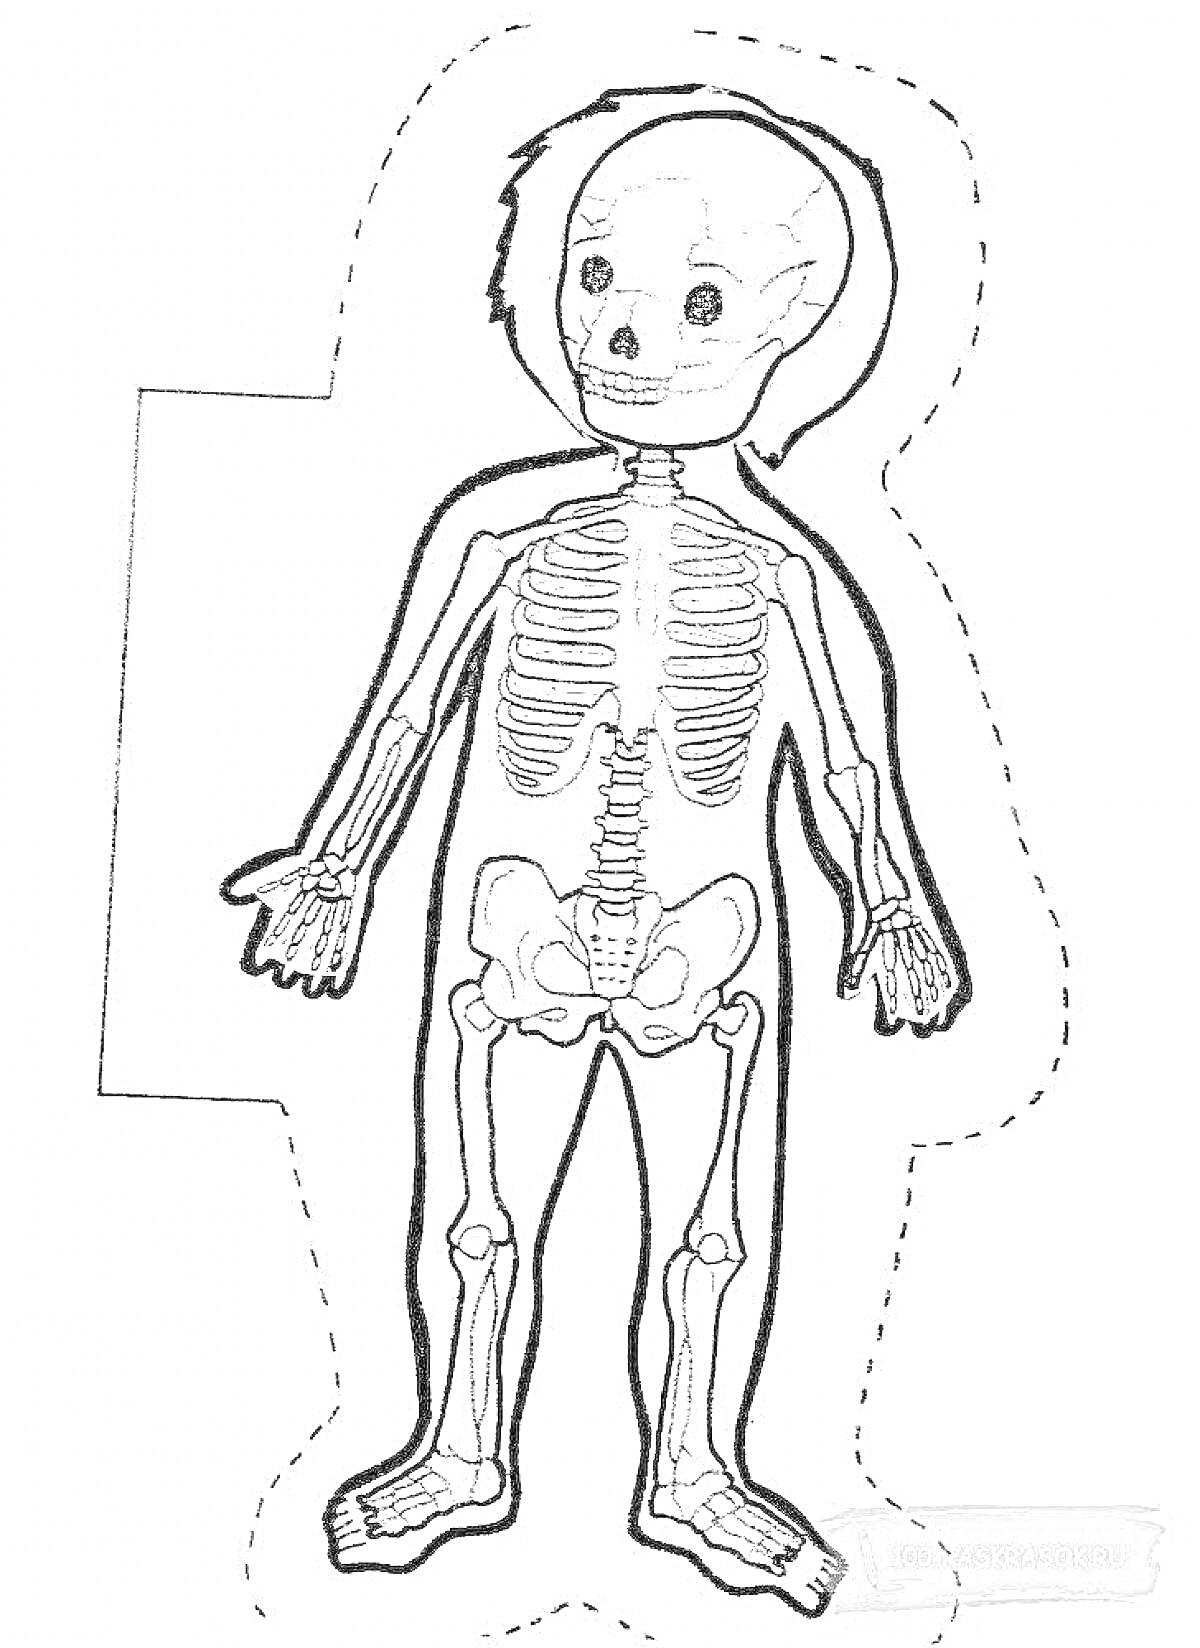 Раскраска скелета человека, включающая череп, грудную клетку, позвоночник, таз, кости рук и ног